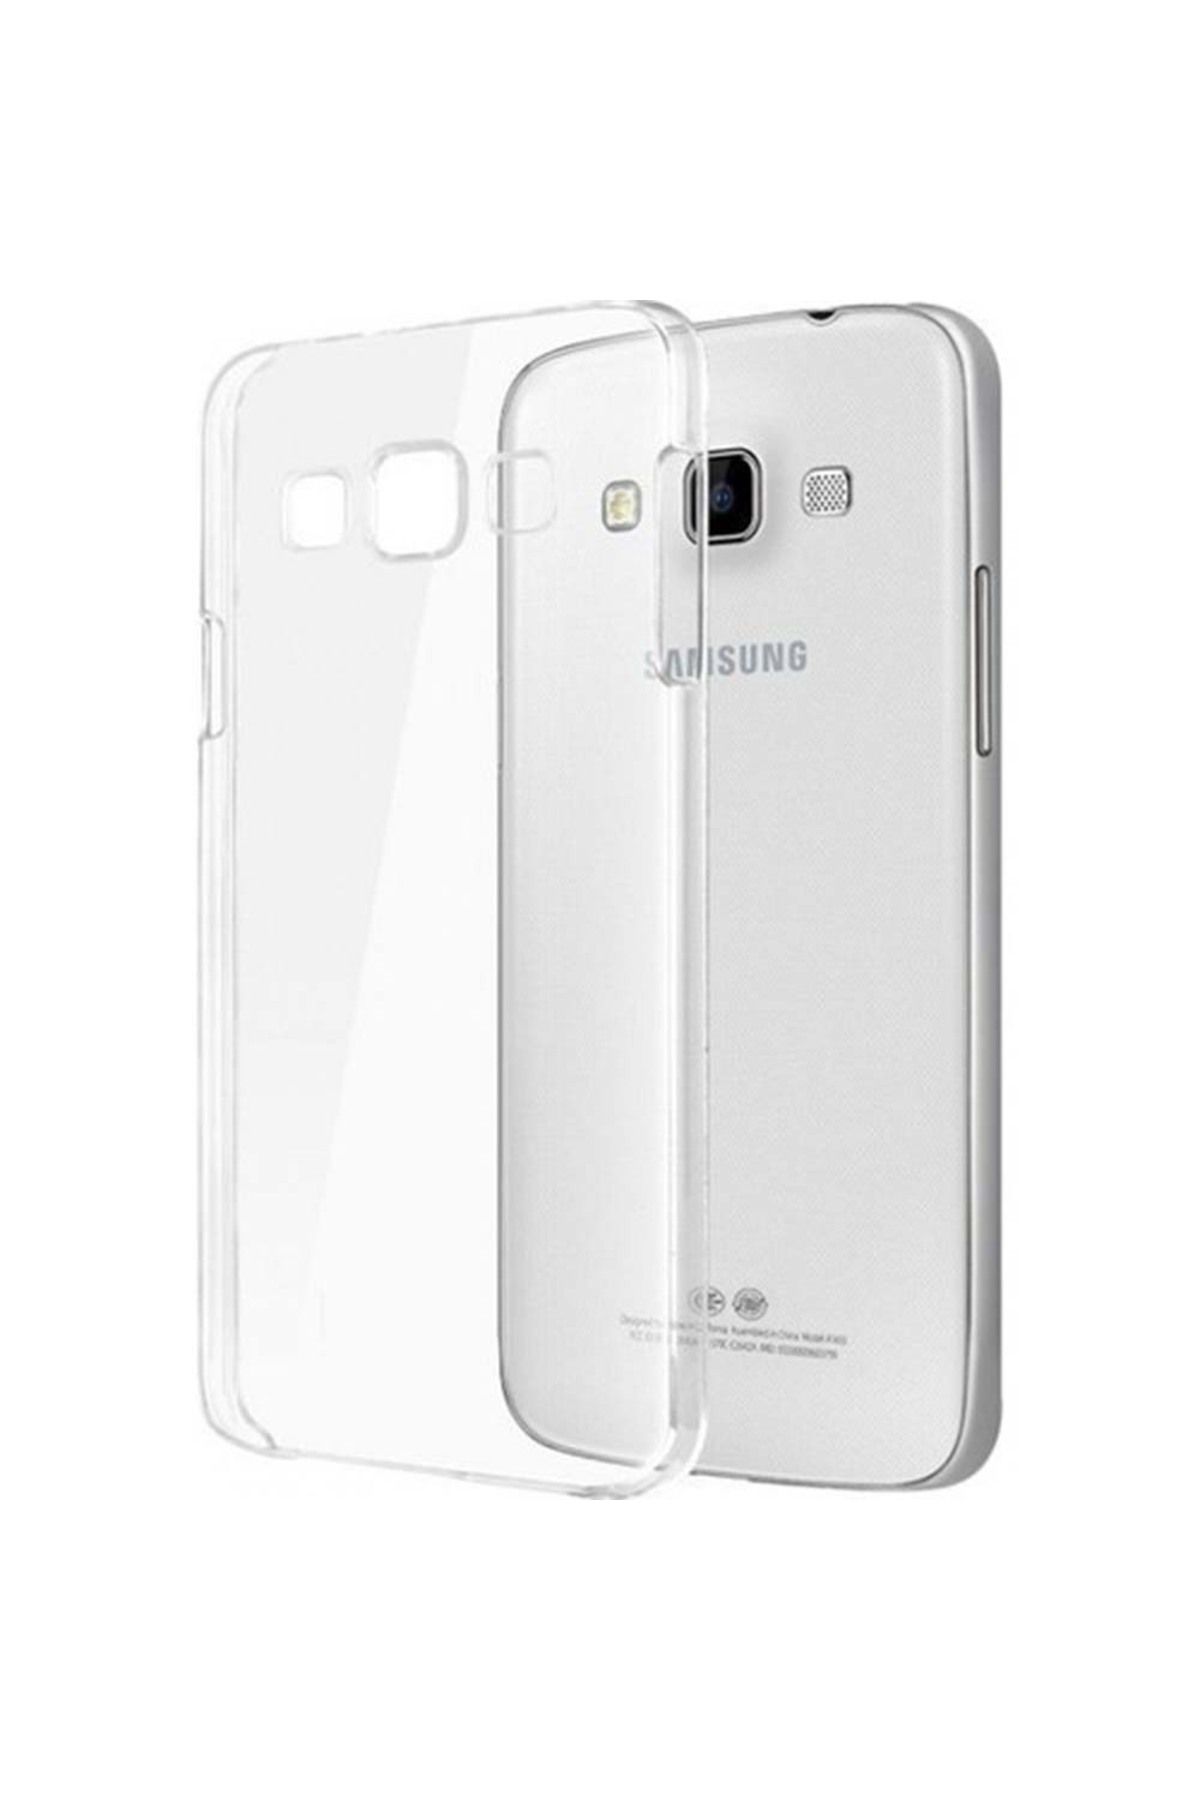 Samsung Galaxy Grand Prime Plus Ile Uyumlu Slim Cover Şeffaf Ef-ag532ctegww